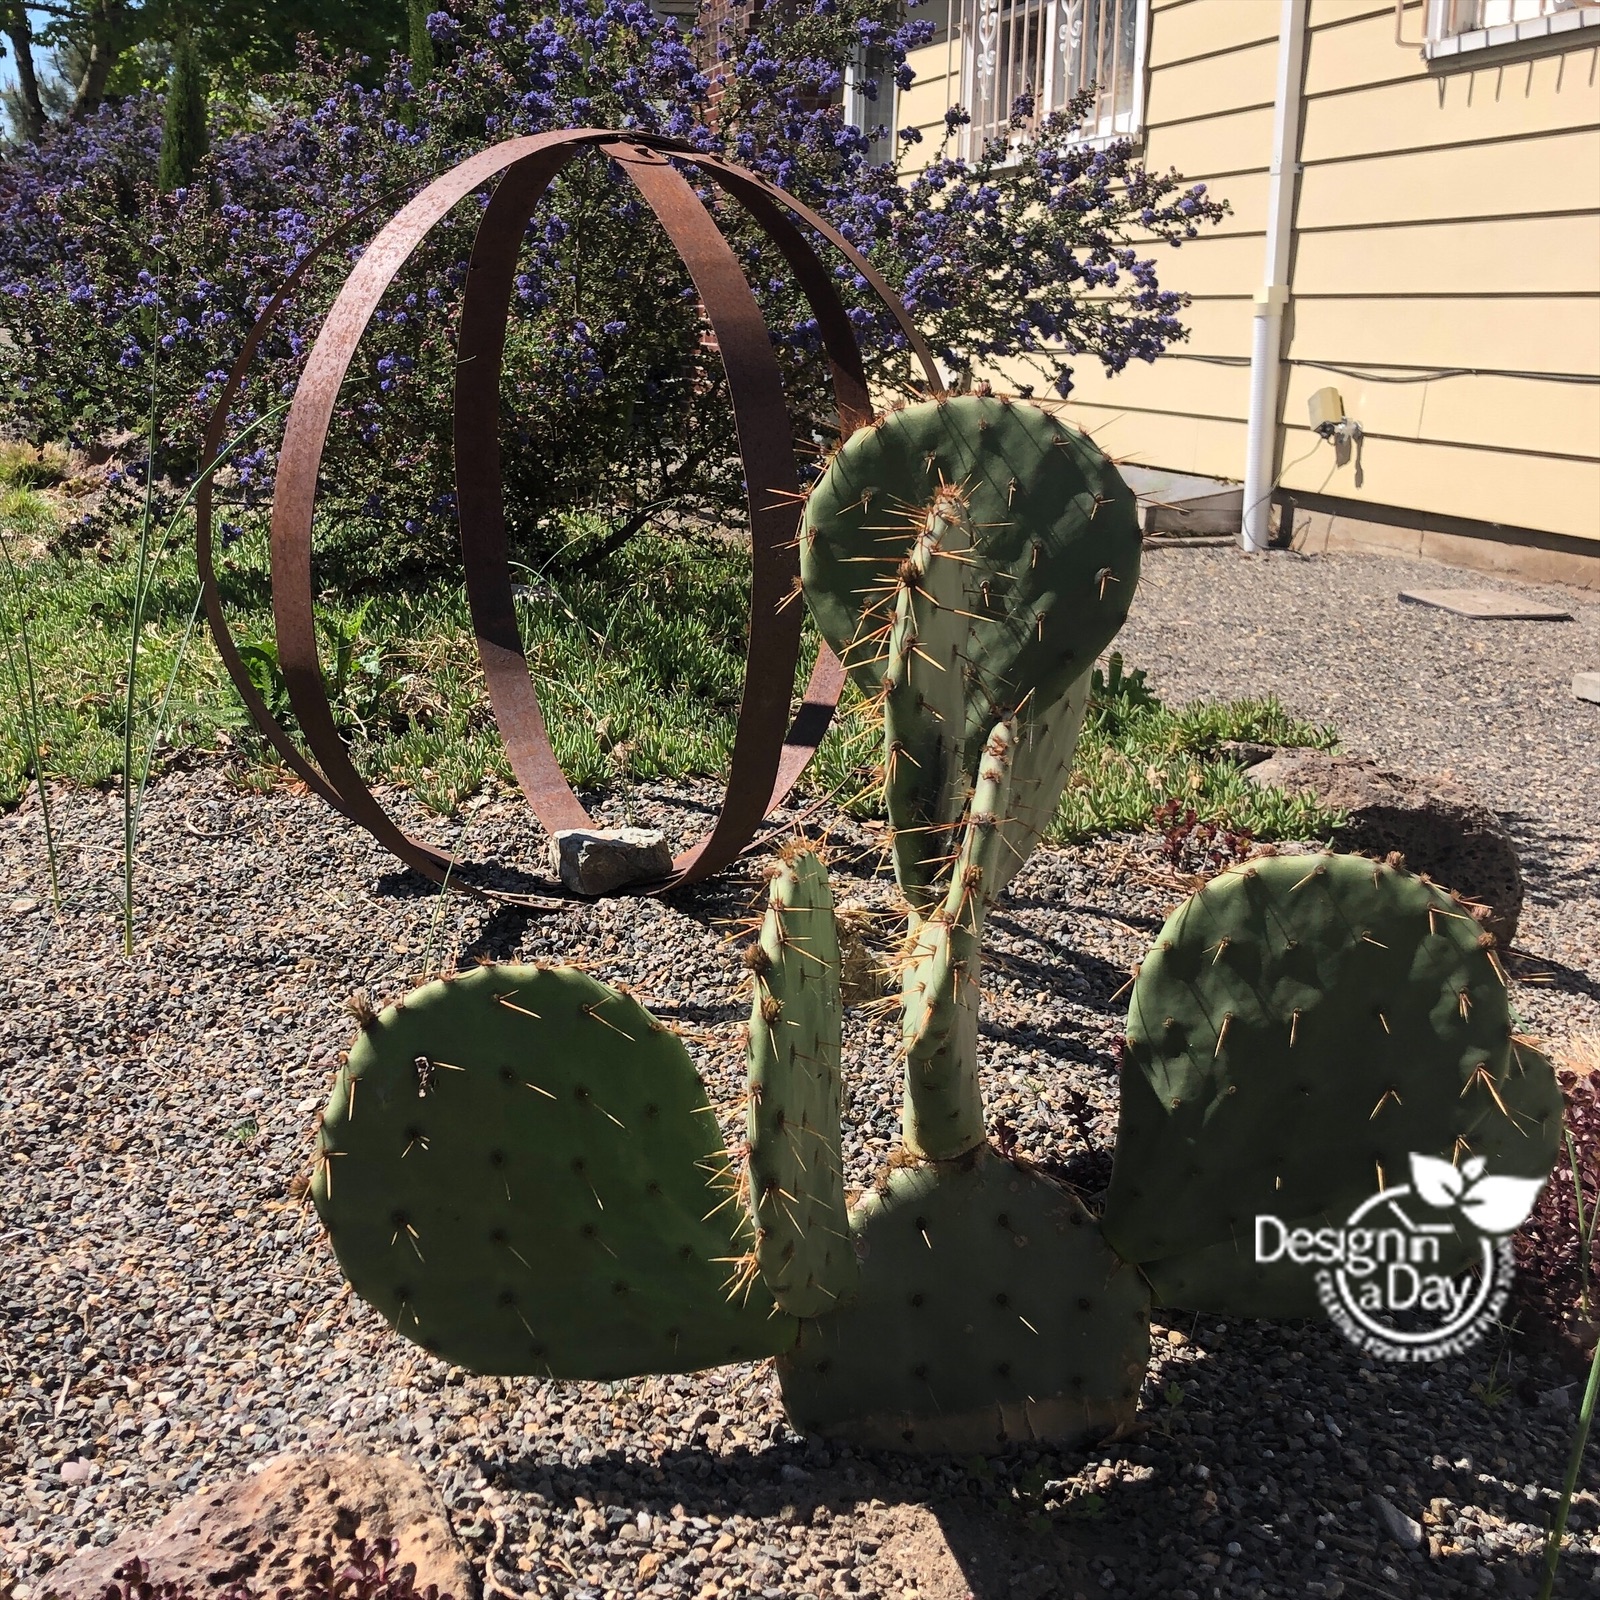 Drought tolerant landscape design includes cactus.